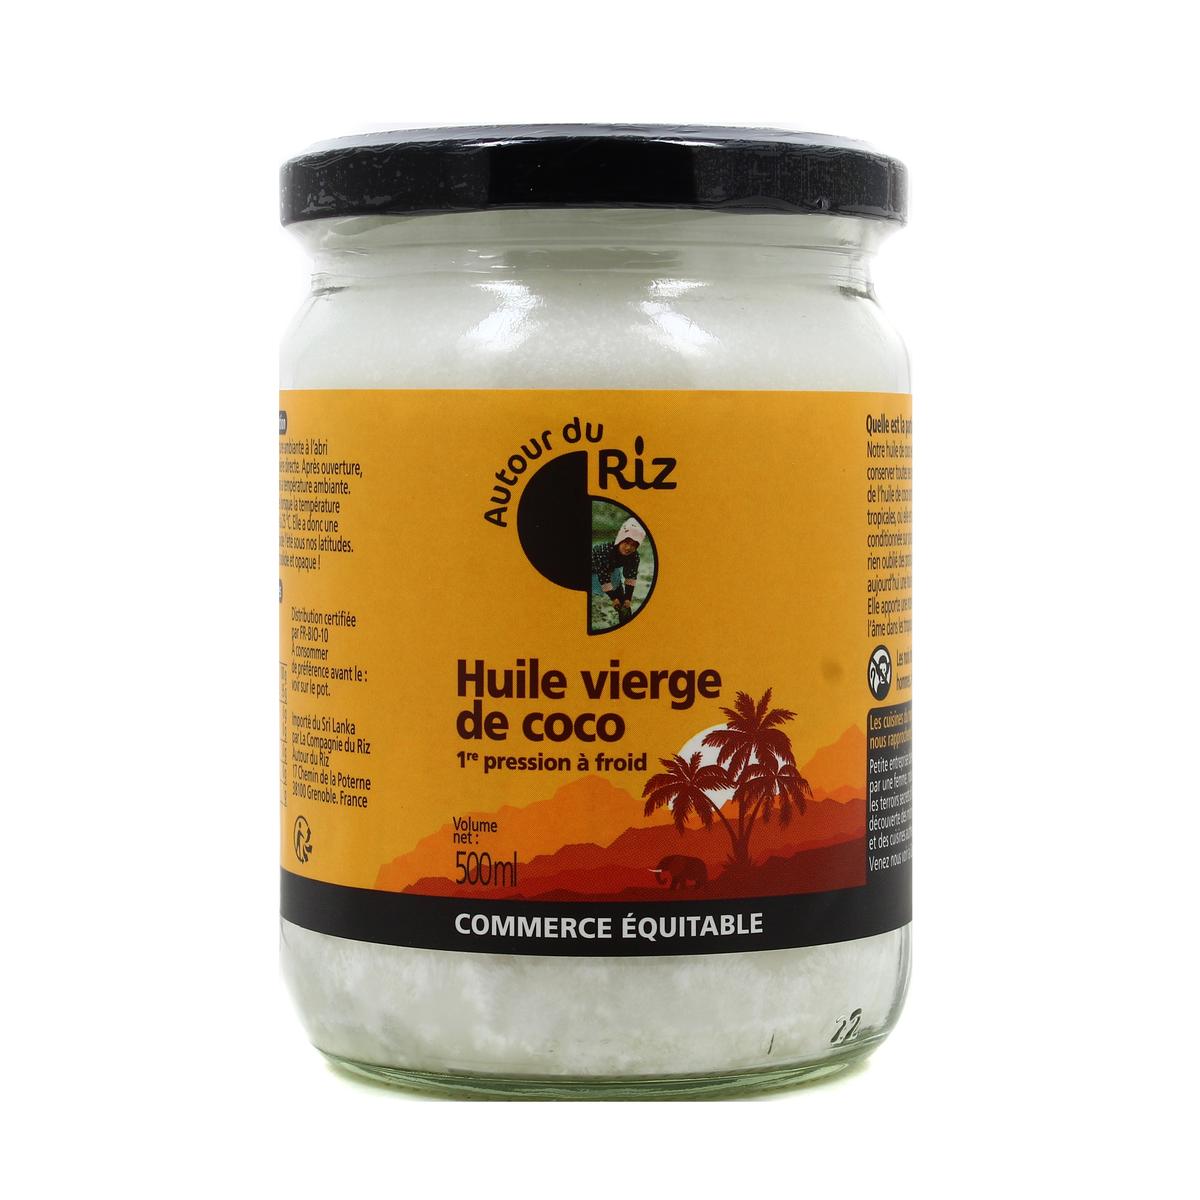  Beurre de coco : Épicerie et Cuisine gastronomique